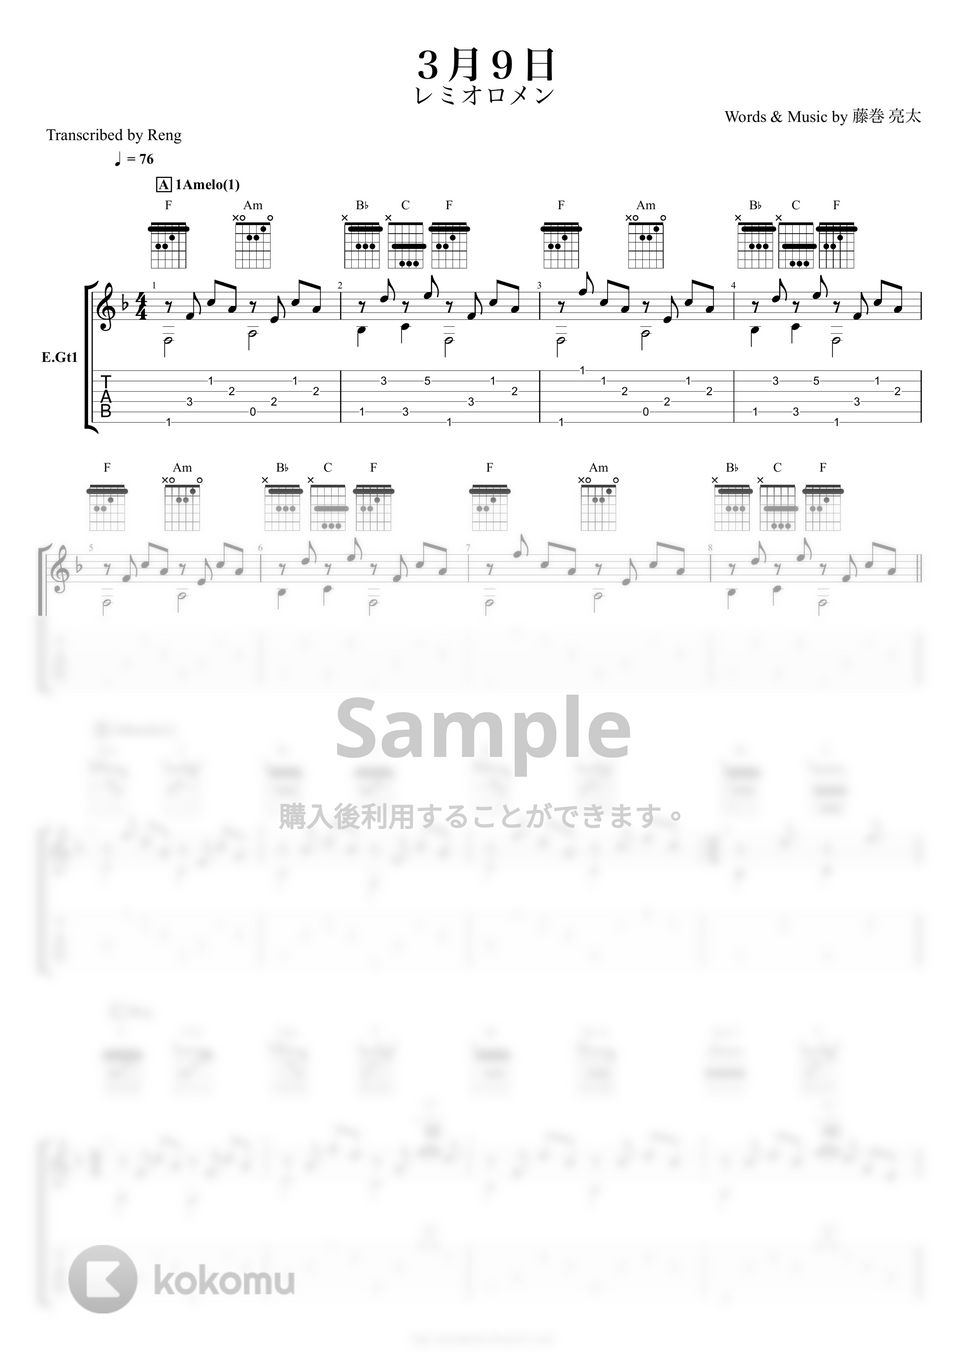 レミオロメン - ３月９日 (E.Gtパート譜/TAB譜) by Reng